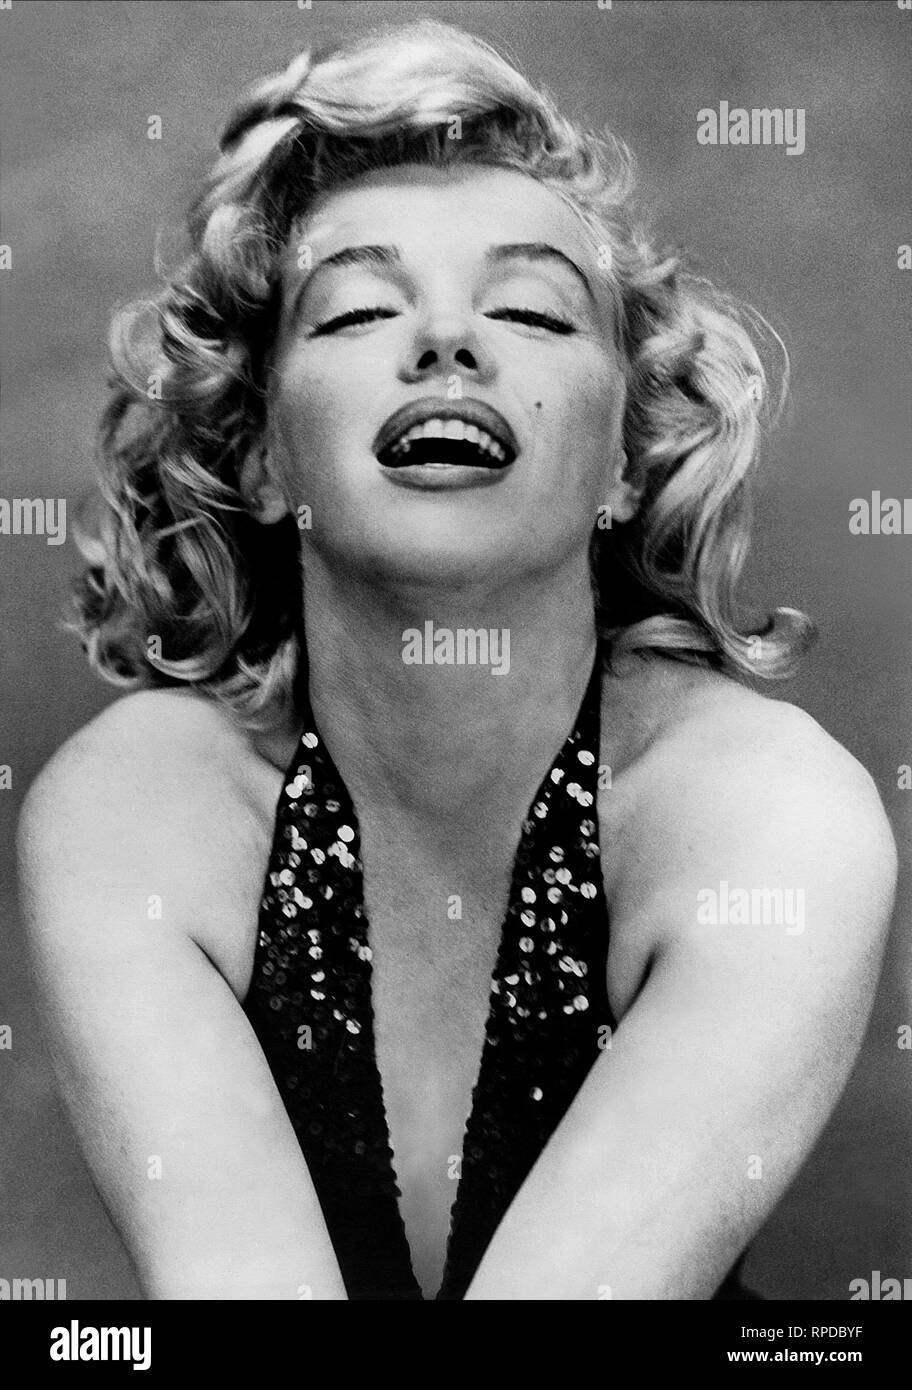 Marilyn monroe immagini e fotografie stock ad alta risoluzione - Alamy